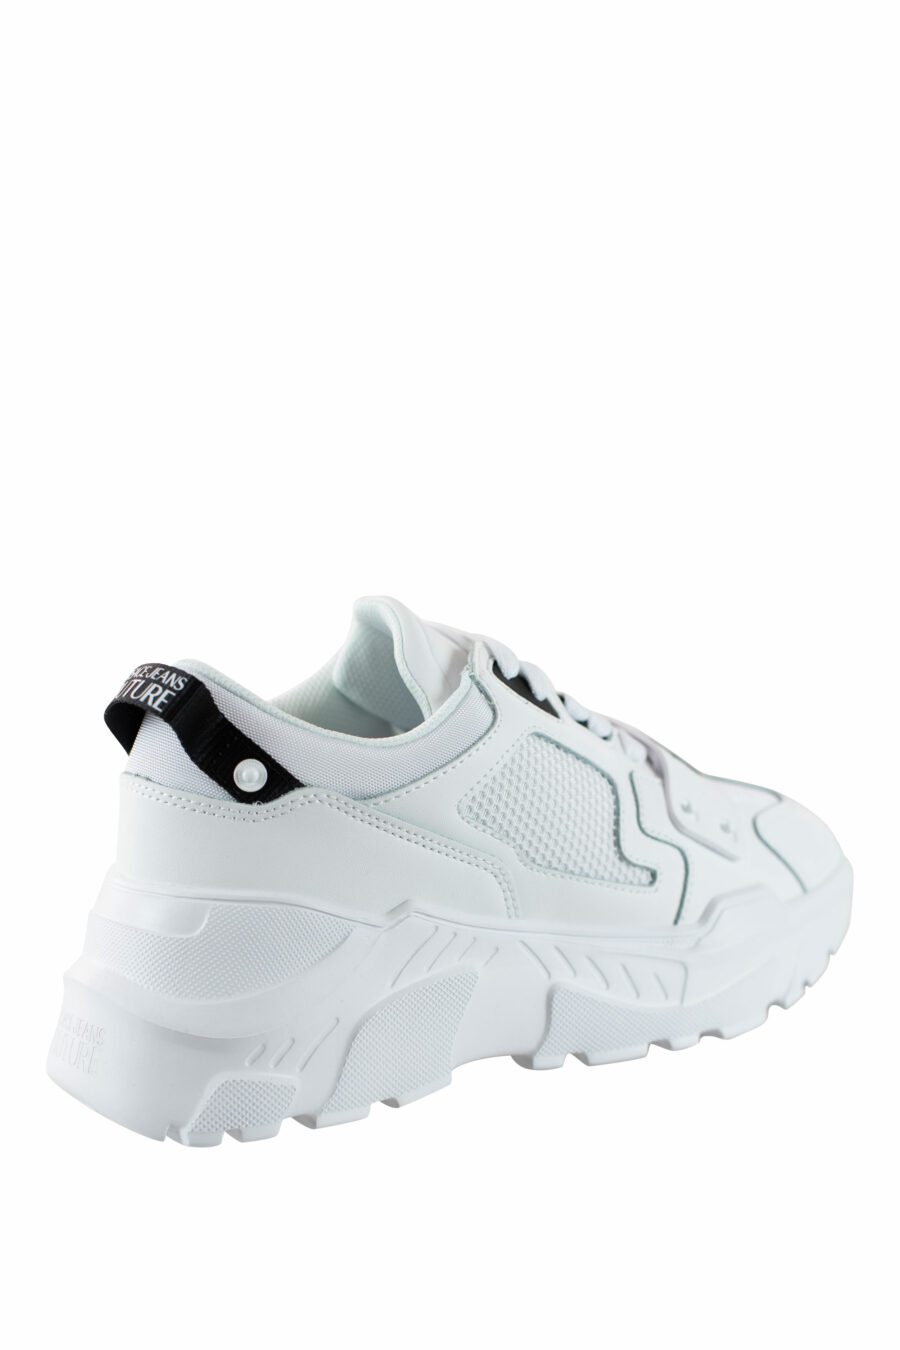 Zapatillas blancas "speedtrack" con detalles negros - IMG 4547